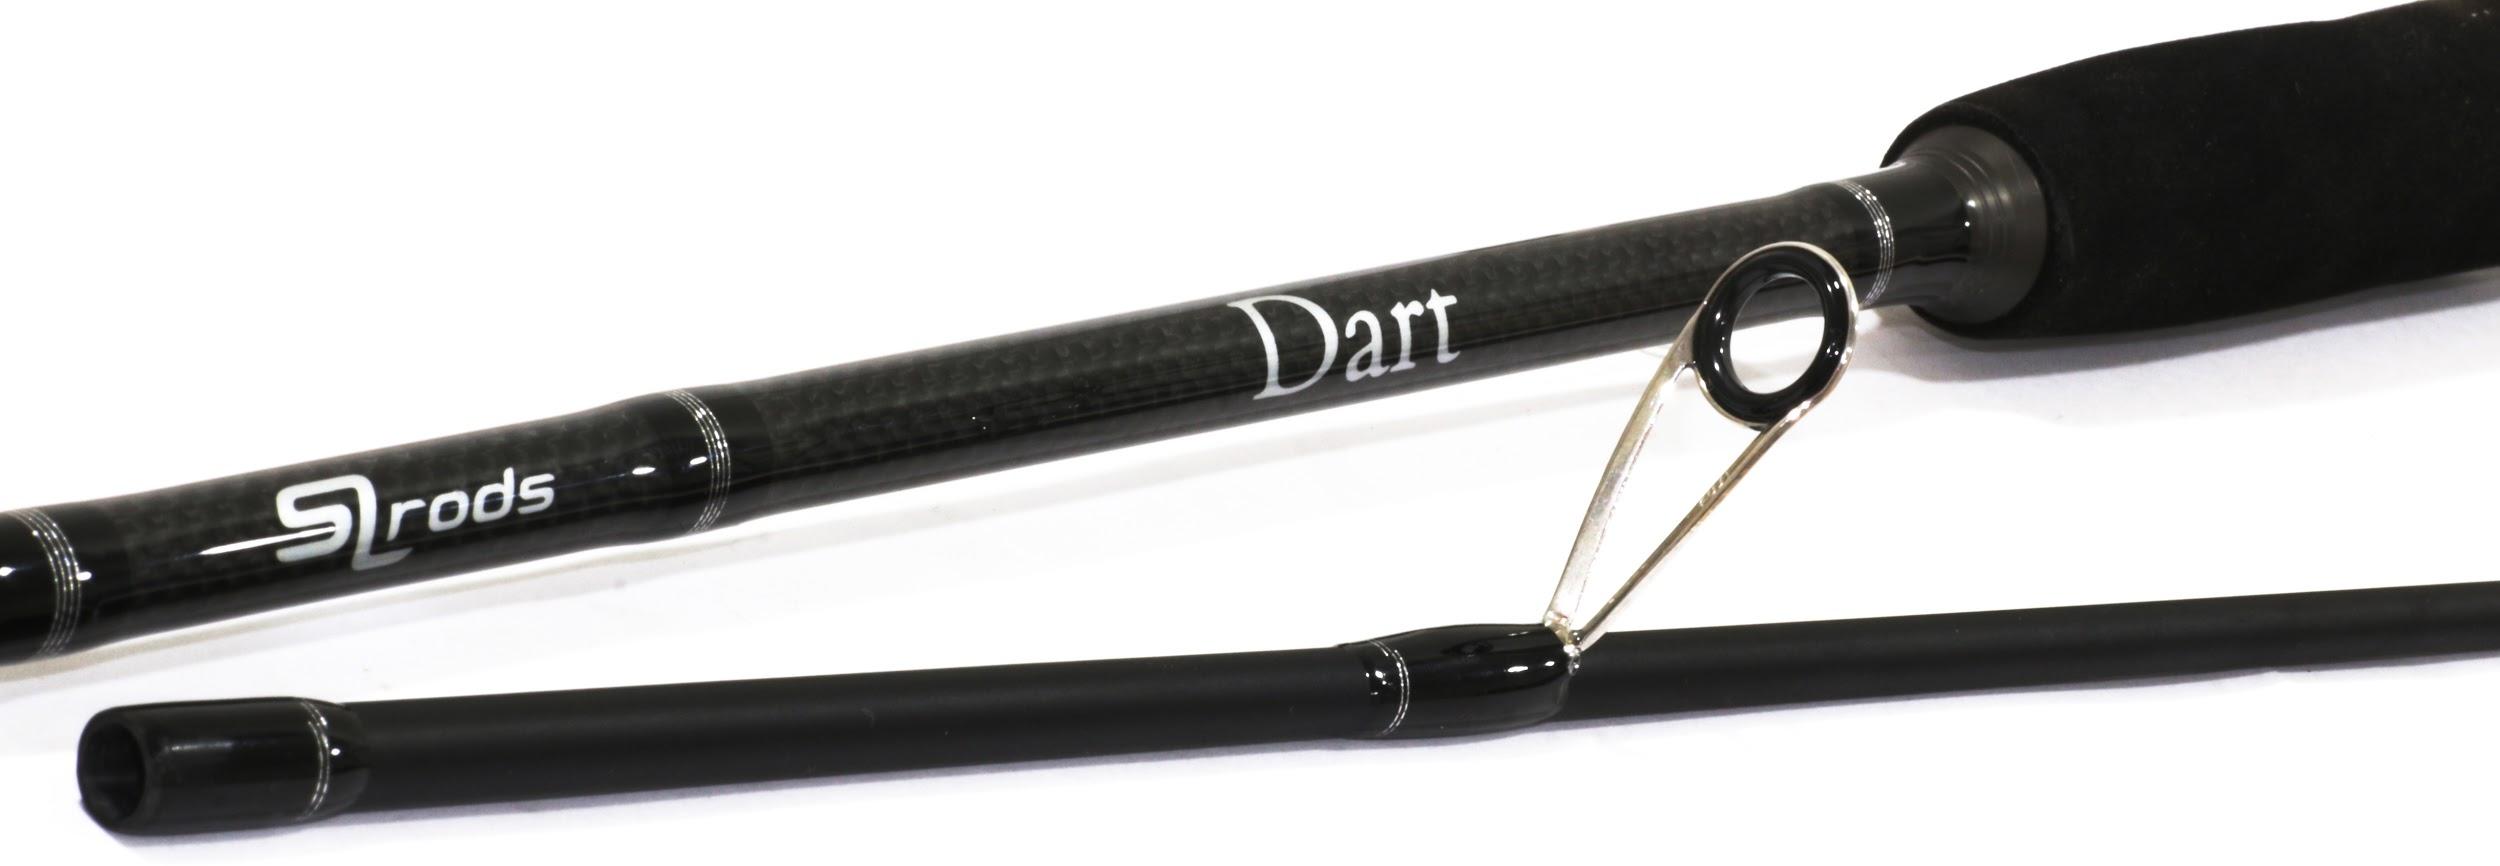 Изображение 1 : Пополнение в семействе SLrods  - новые модели спиннингов Dart